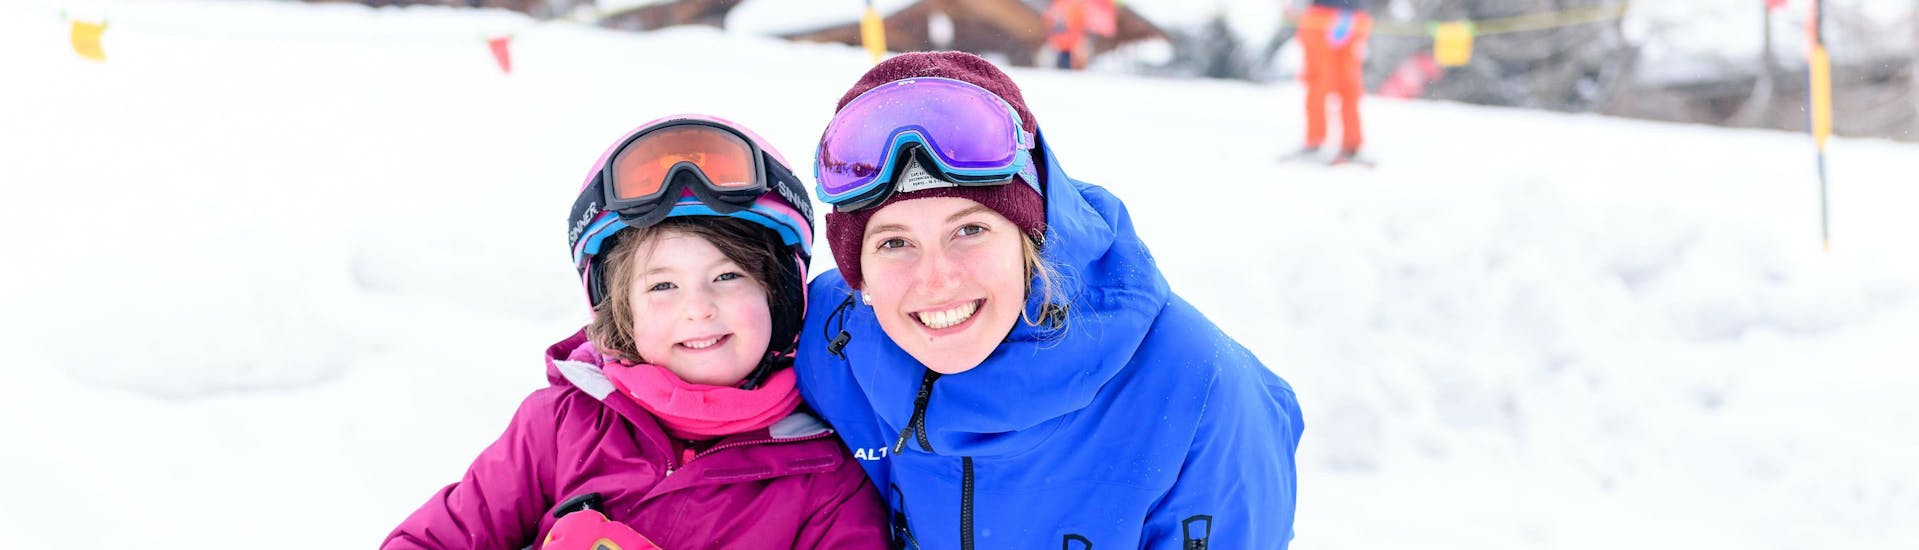 Clases particulares de esquí para niños de todas las edades en Gstaad.